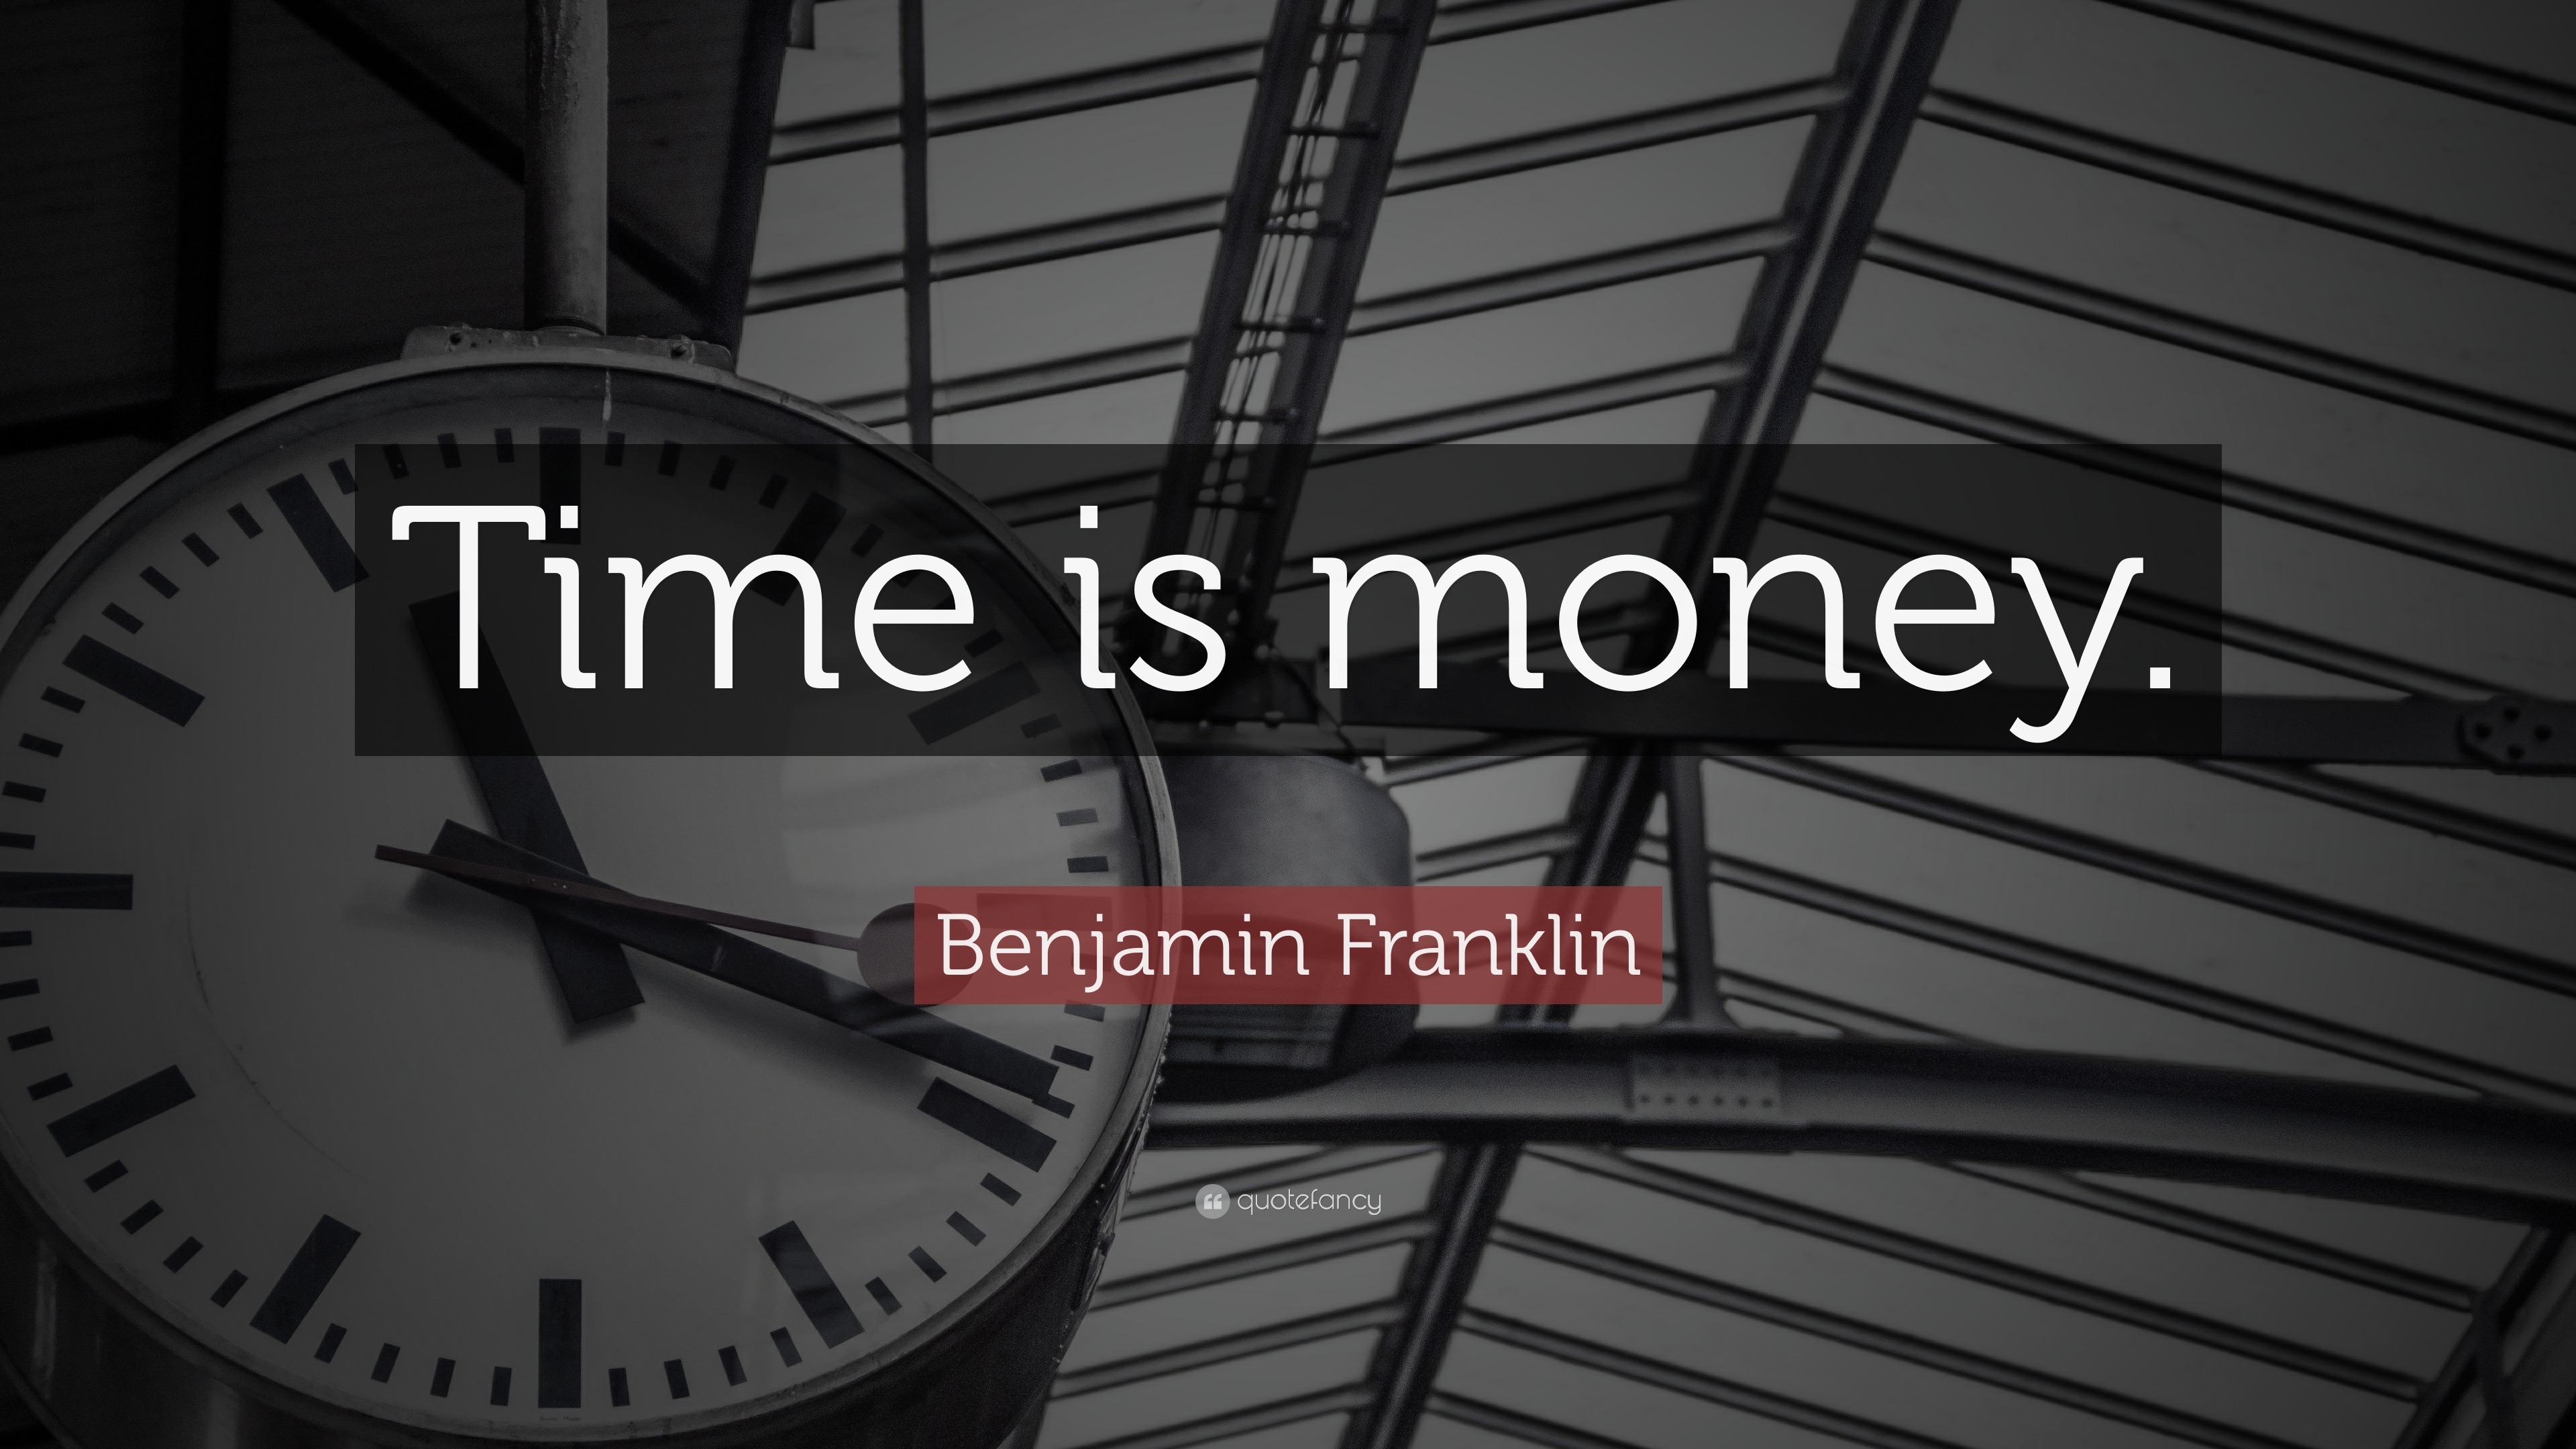 Benjamin Franklin Quote: “Time is money.” (12 wallpapers) - Quotefancy